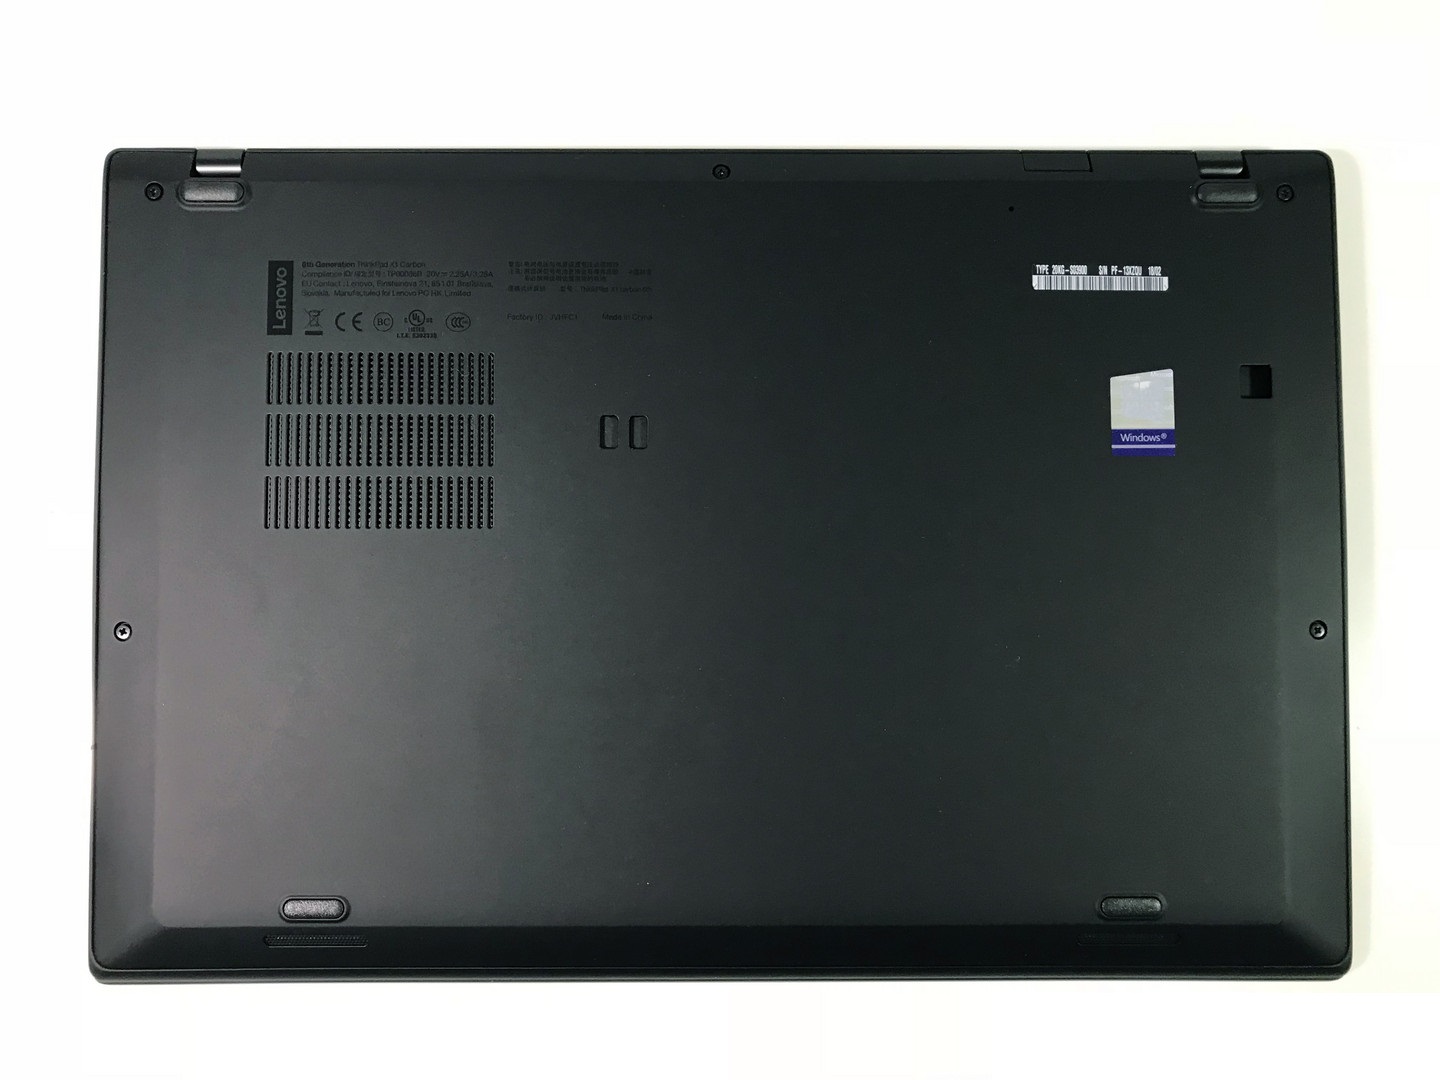 Đánh giá laptop Lenovo Thinkpad X1 Carbon Gen 6 (2018), Chuyên trang tư vấn laptop